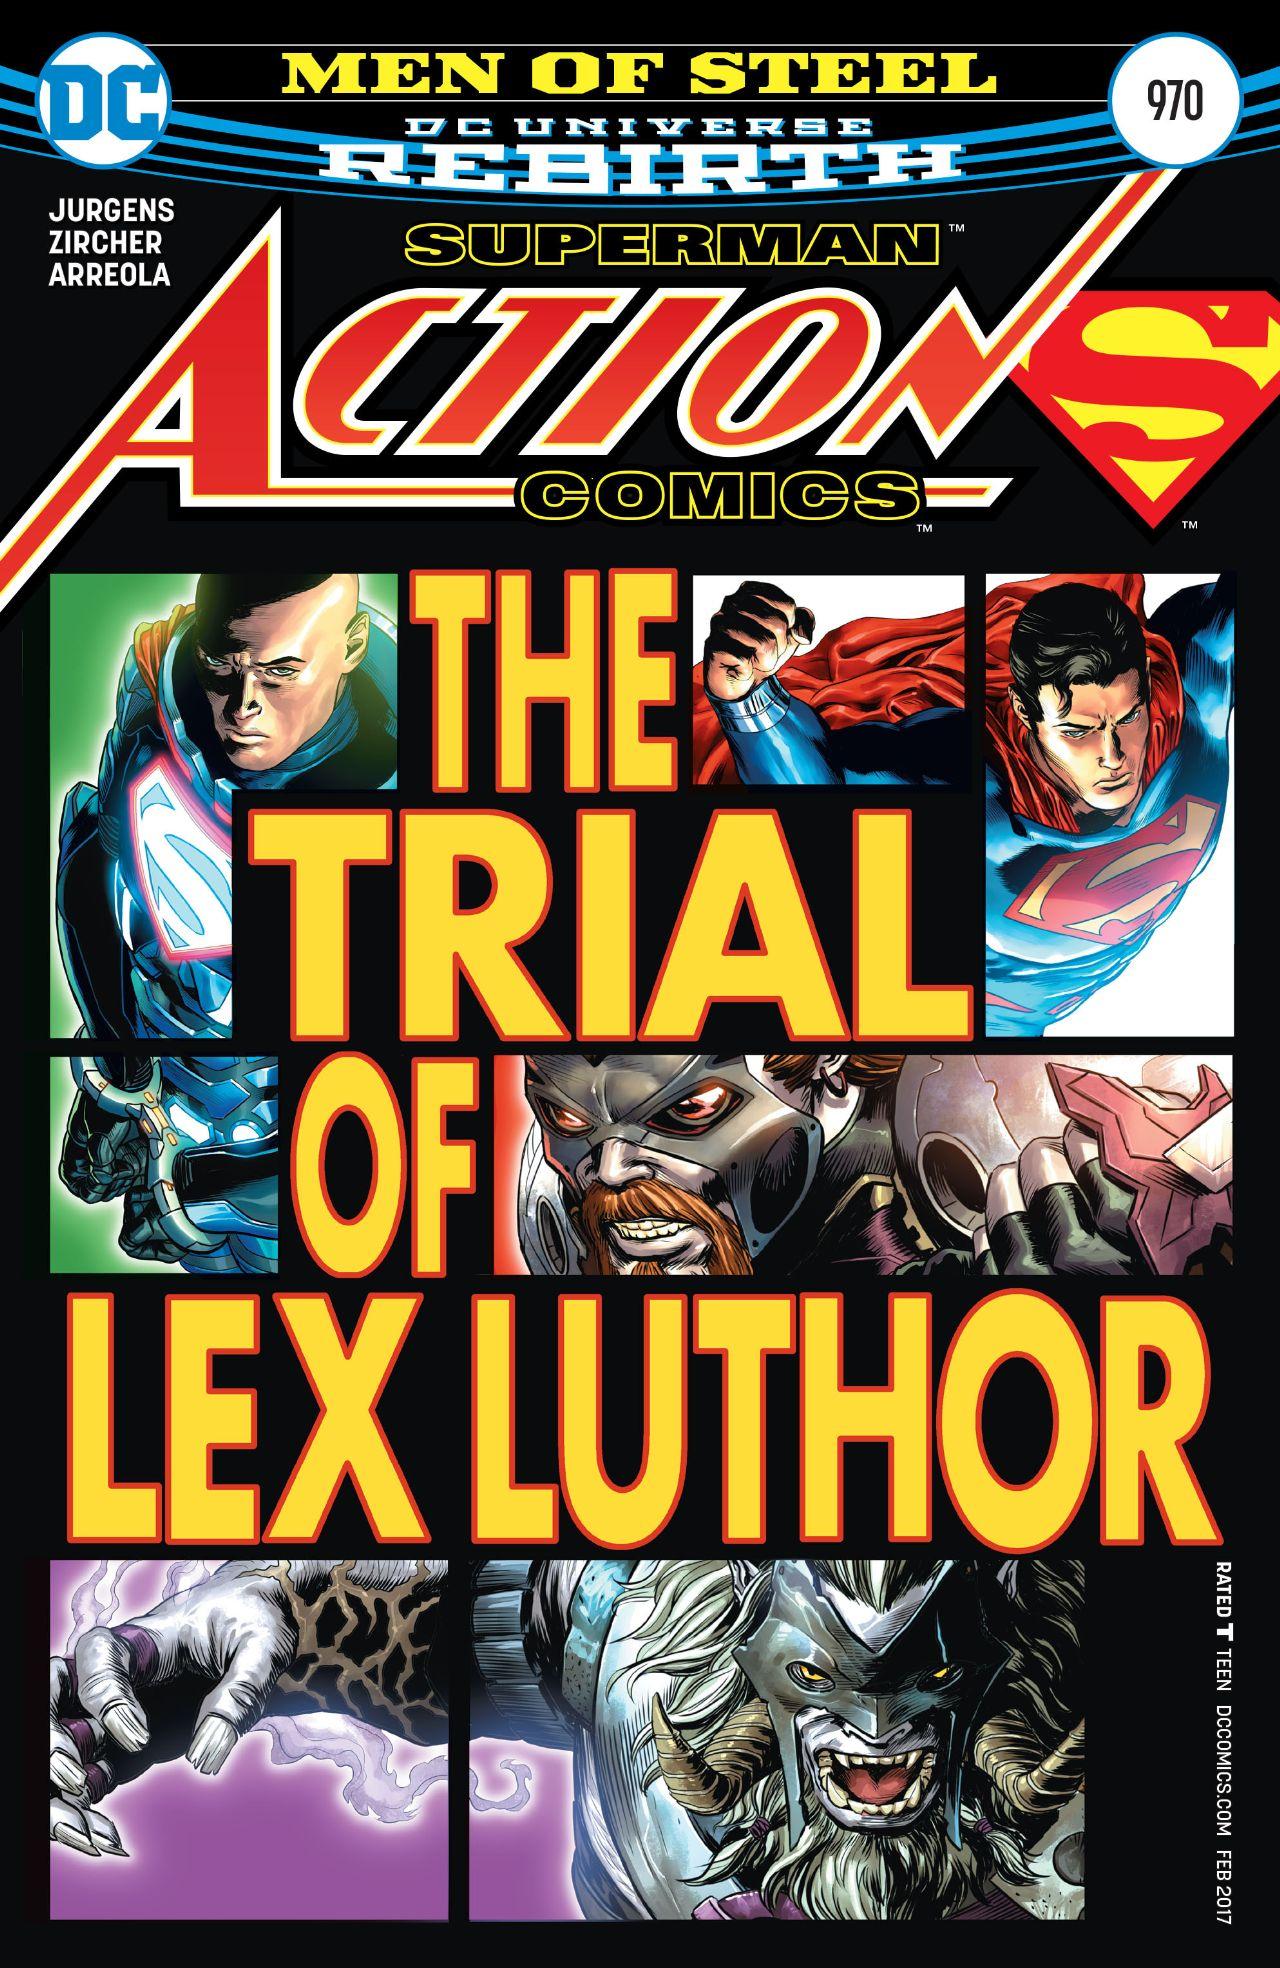 Action Comics Vol. 1 #970